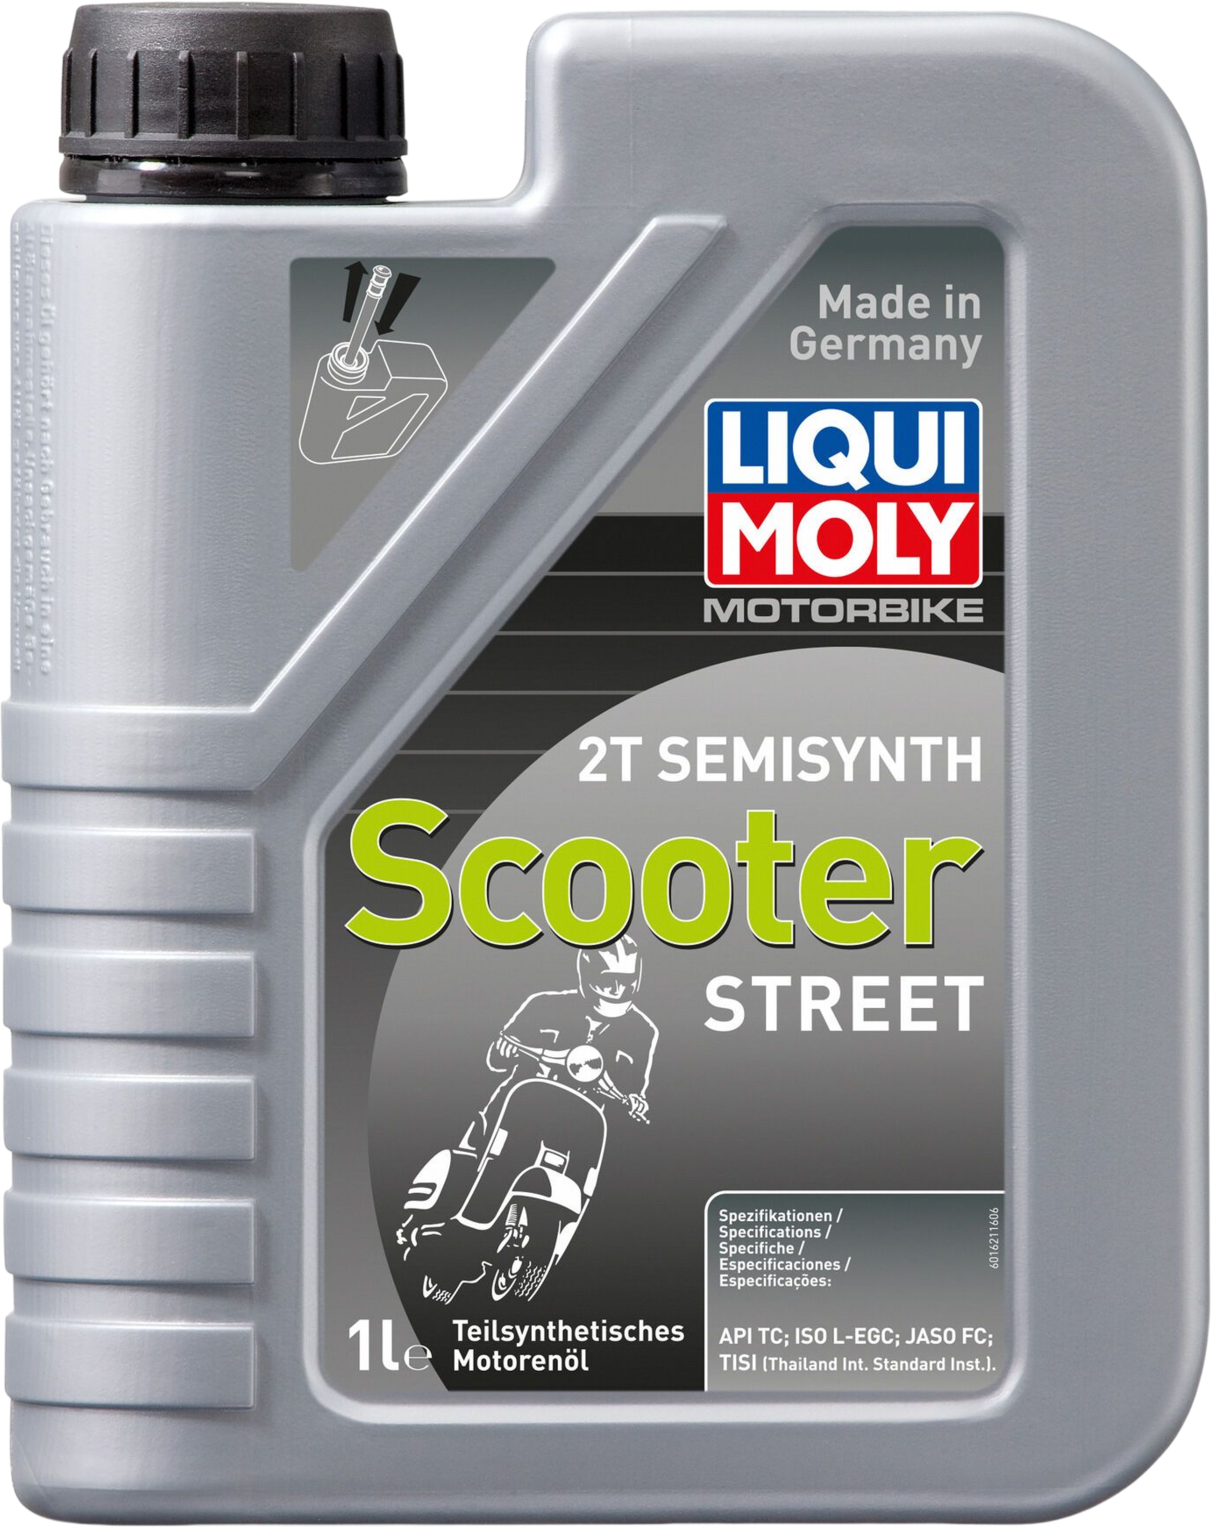 Liqui Moly Motorbike 2T Semisynth Scooter Street, 6 x 1 lt detail 2